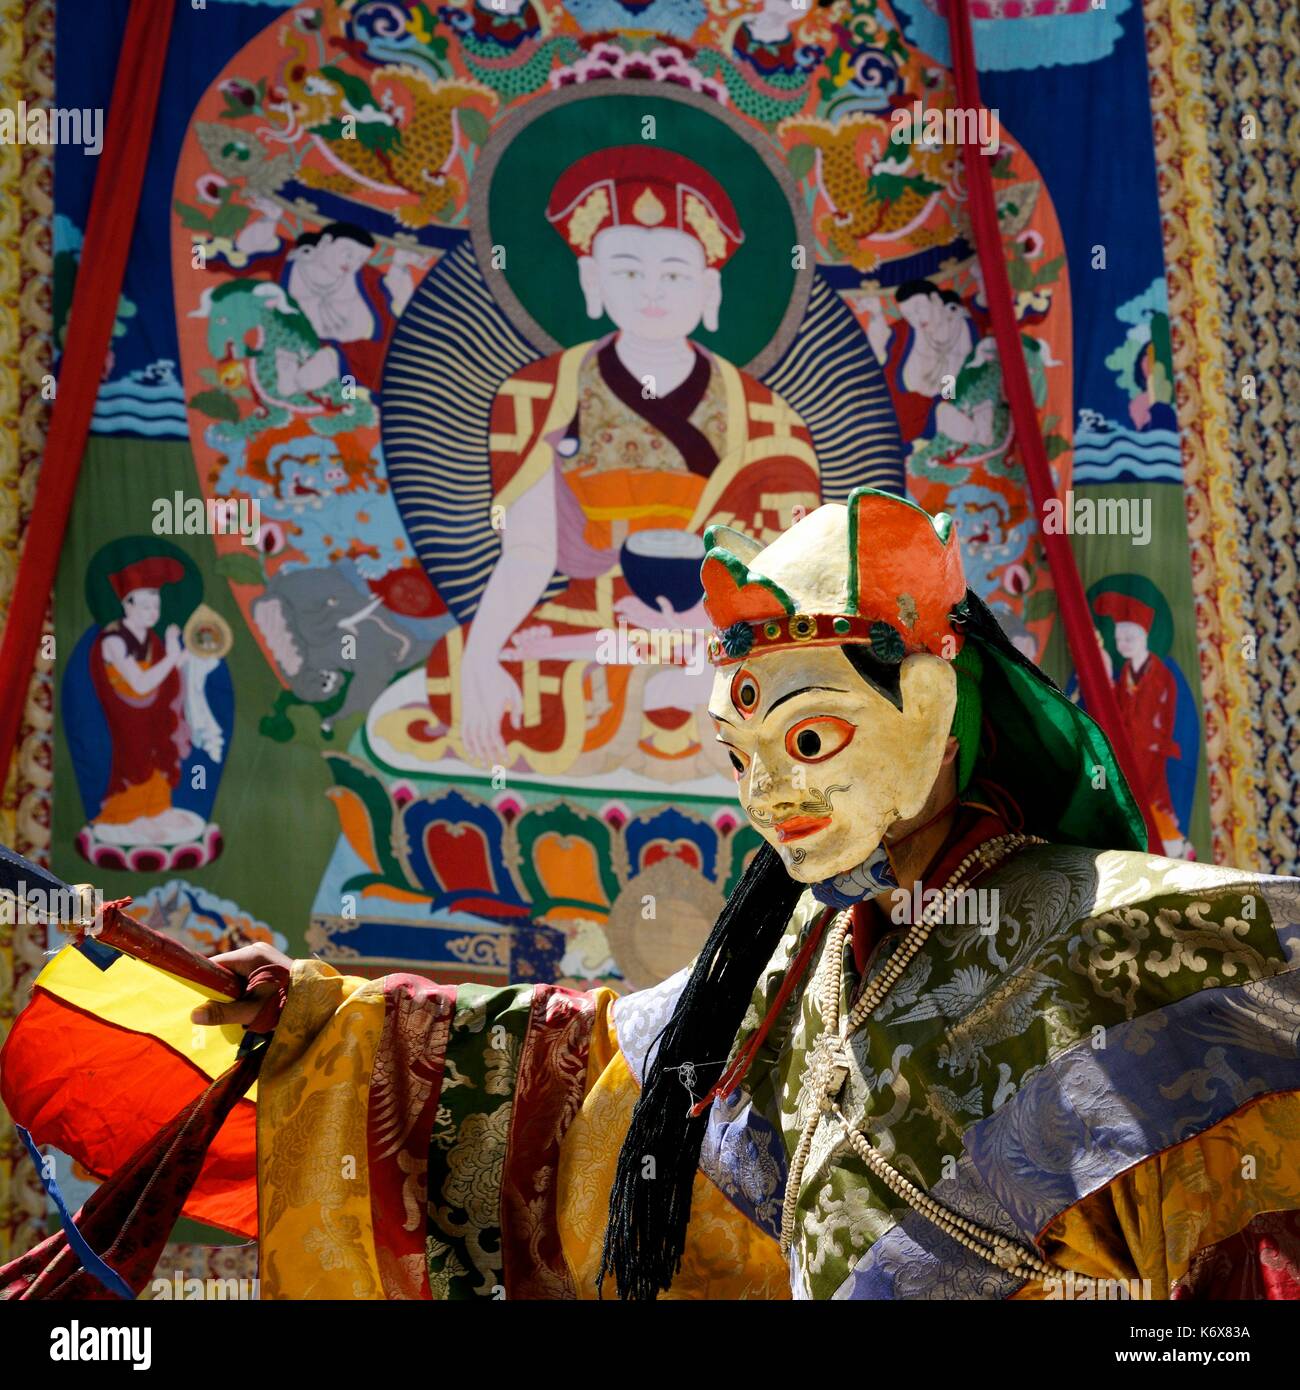 India, dello Stato del Jammu e Kashmir, Himalaya, Ladakh, Indus Valle, festival presso il monastero buddista di Phyang, maschera sacra danze eseguite da monaci thangka di Skyoba Jigten Gombo (il fondatore dell'ordine Drikungpa) in background Foto Stock